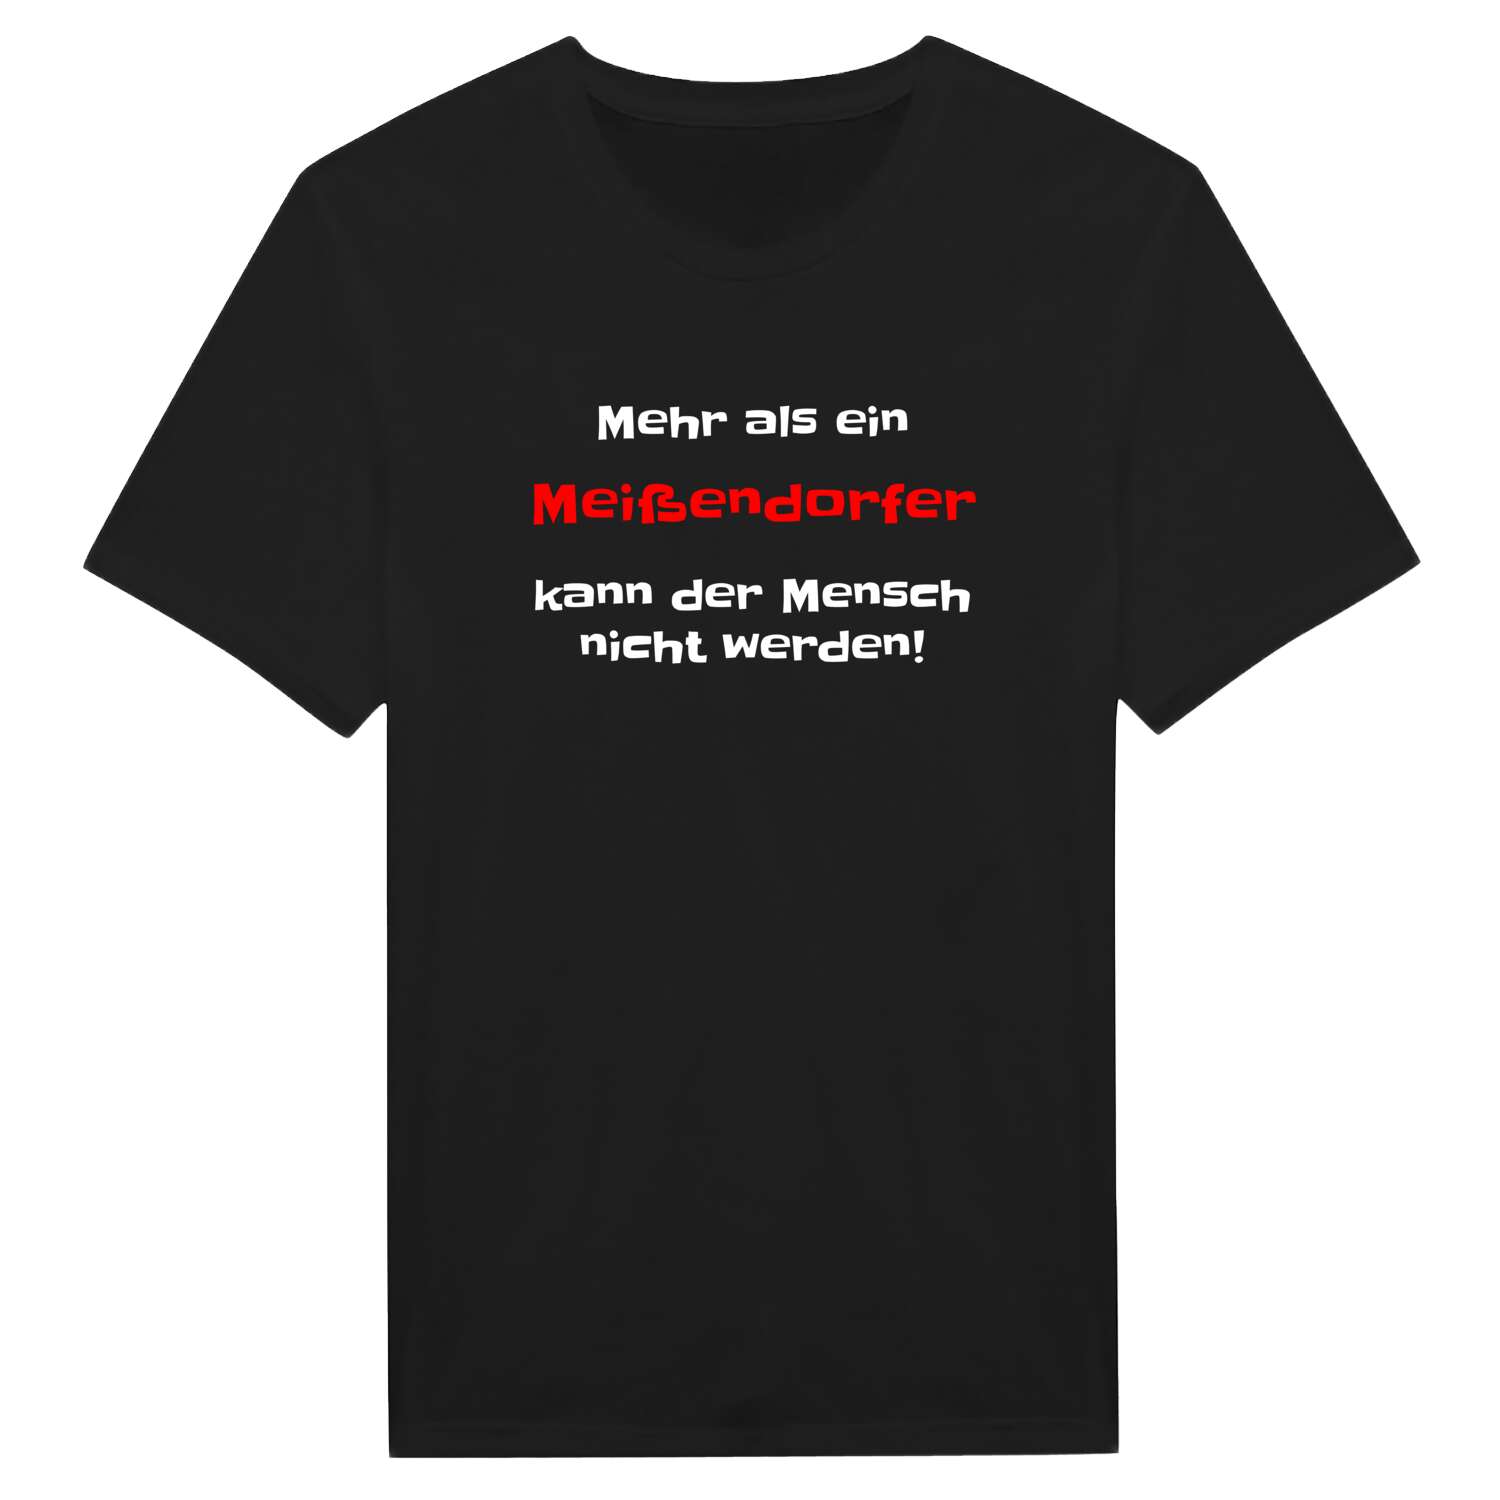 Meißendorf T-Shirt »Mehr als ein«